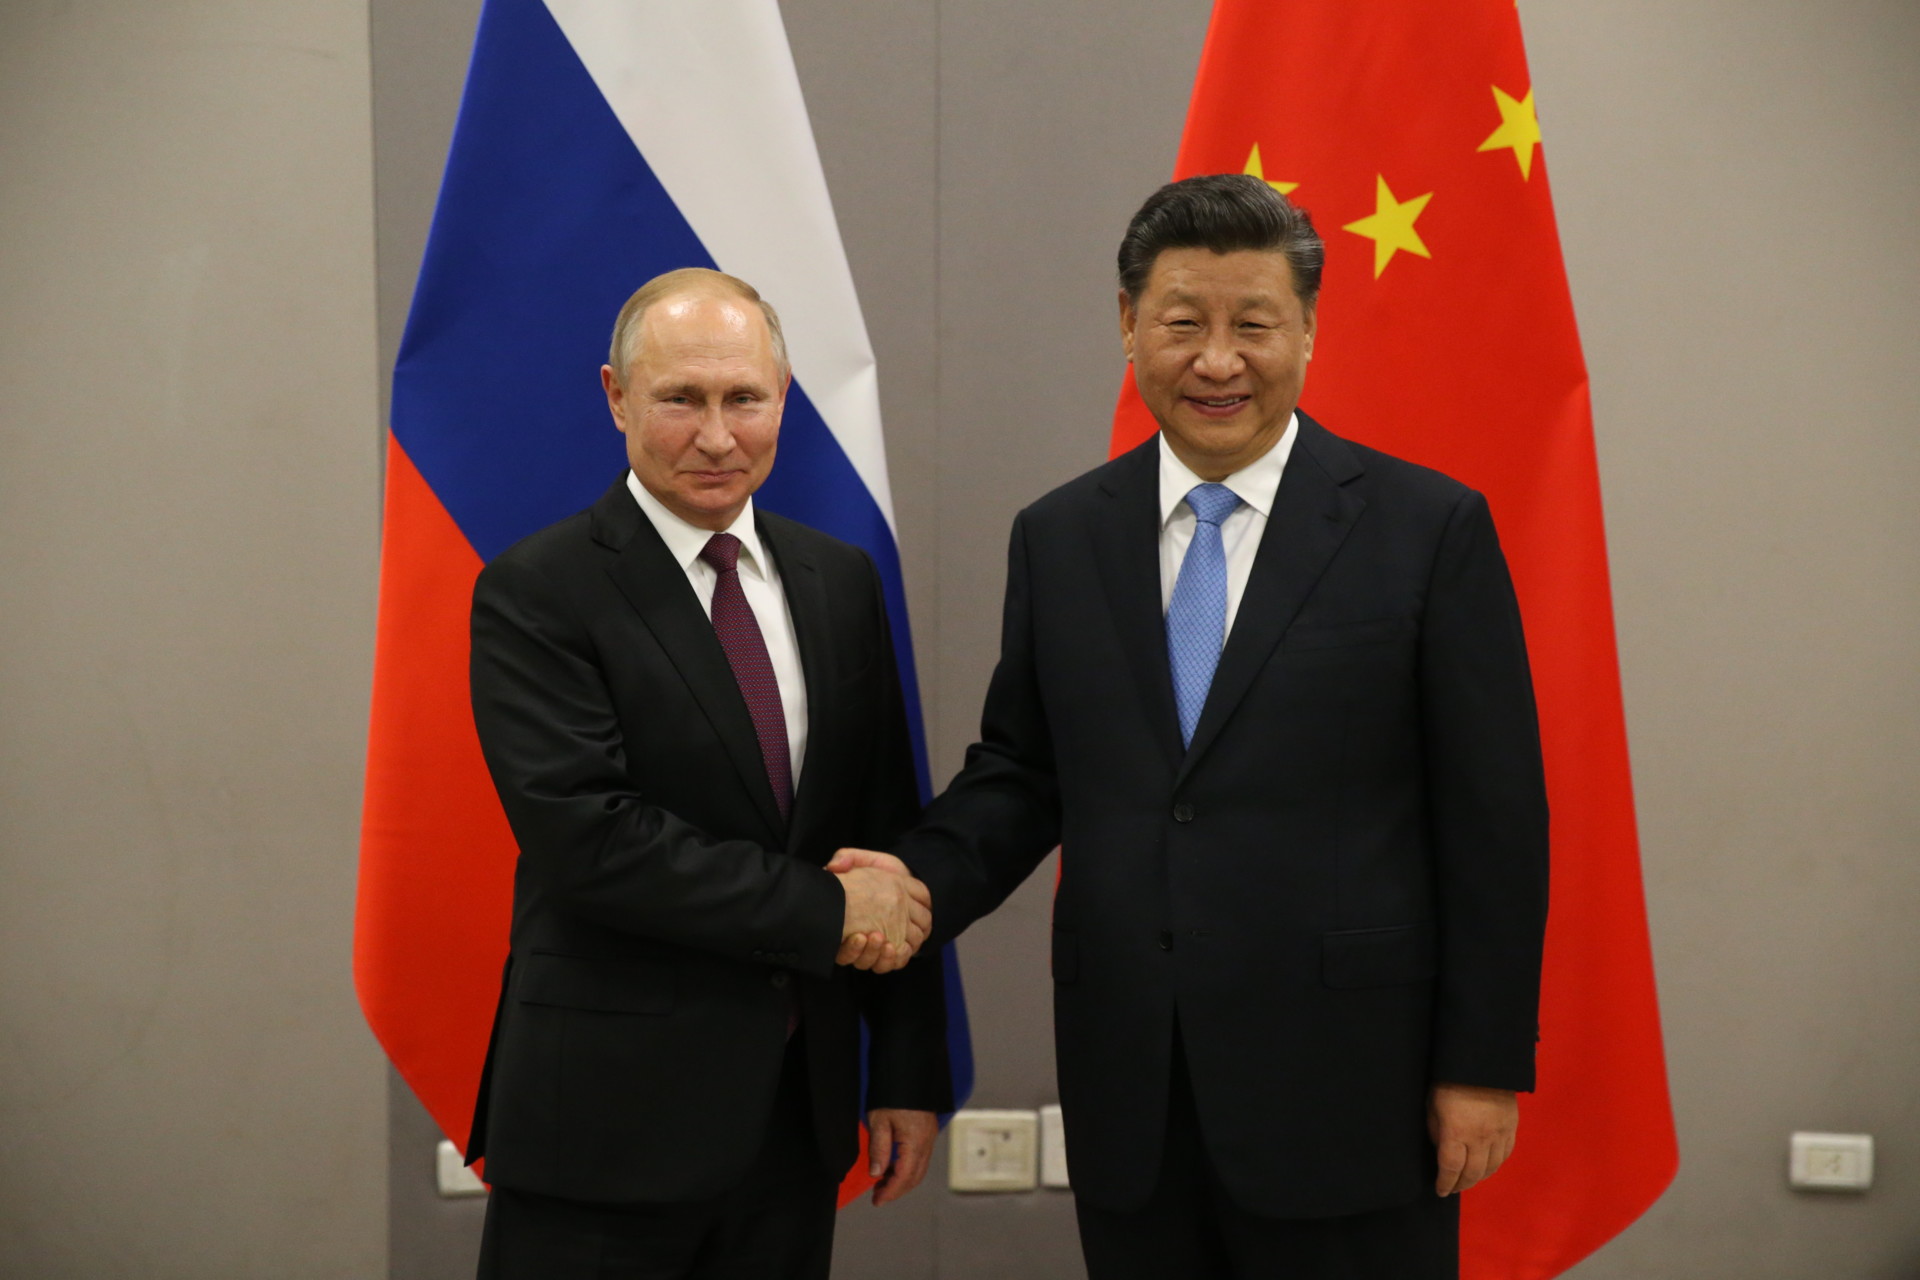 The Sino-Russian Partnership Gains Momentum